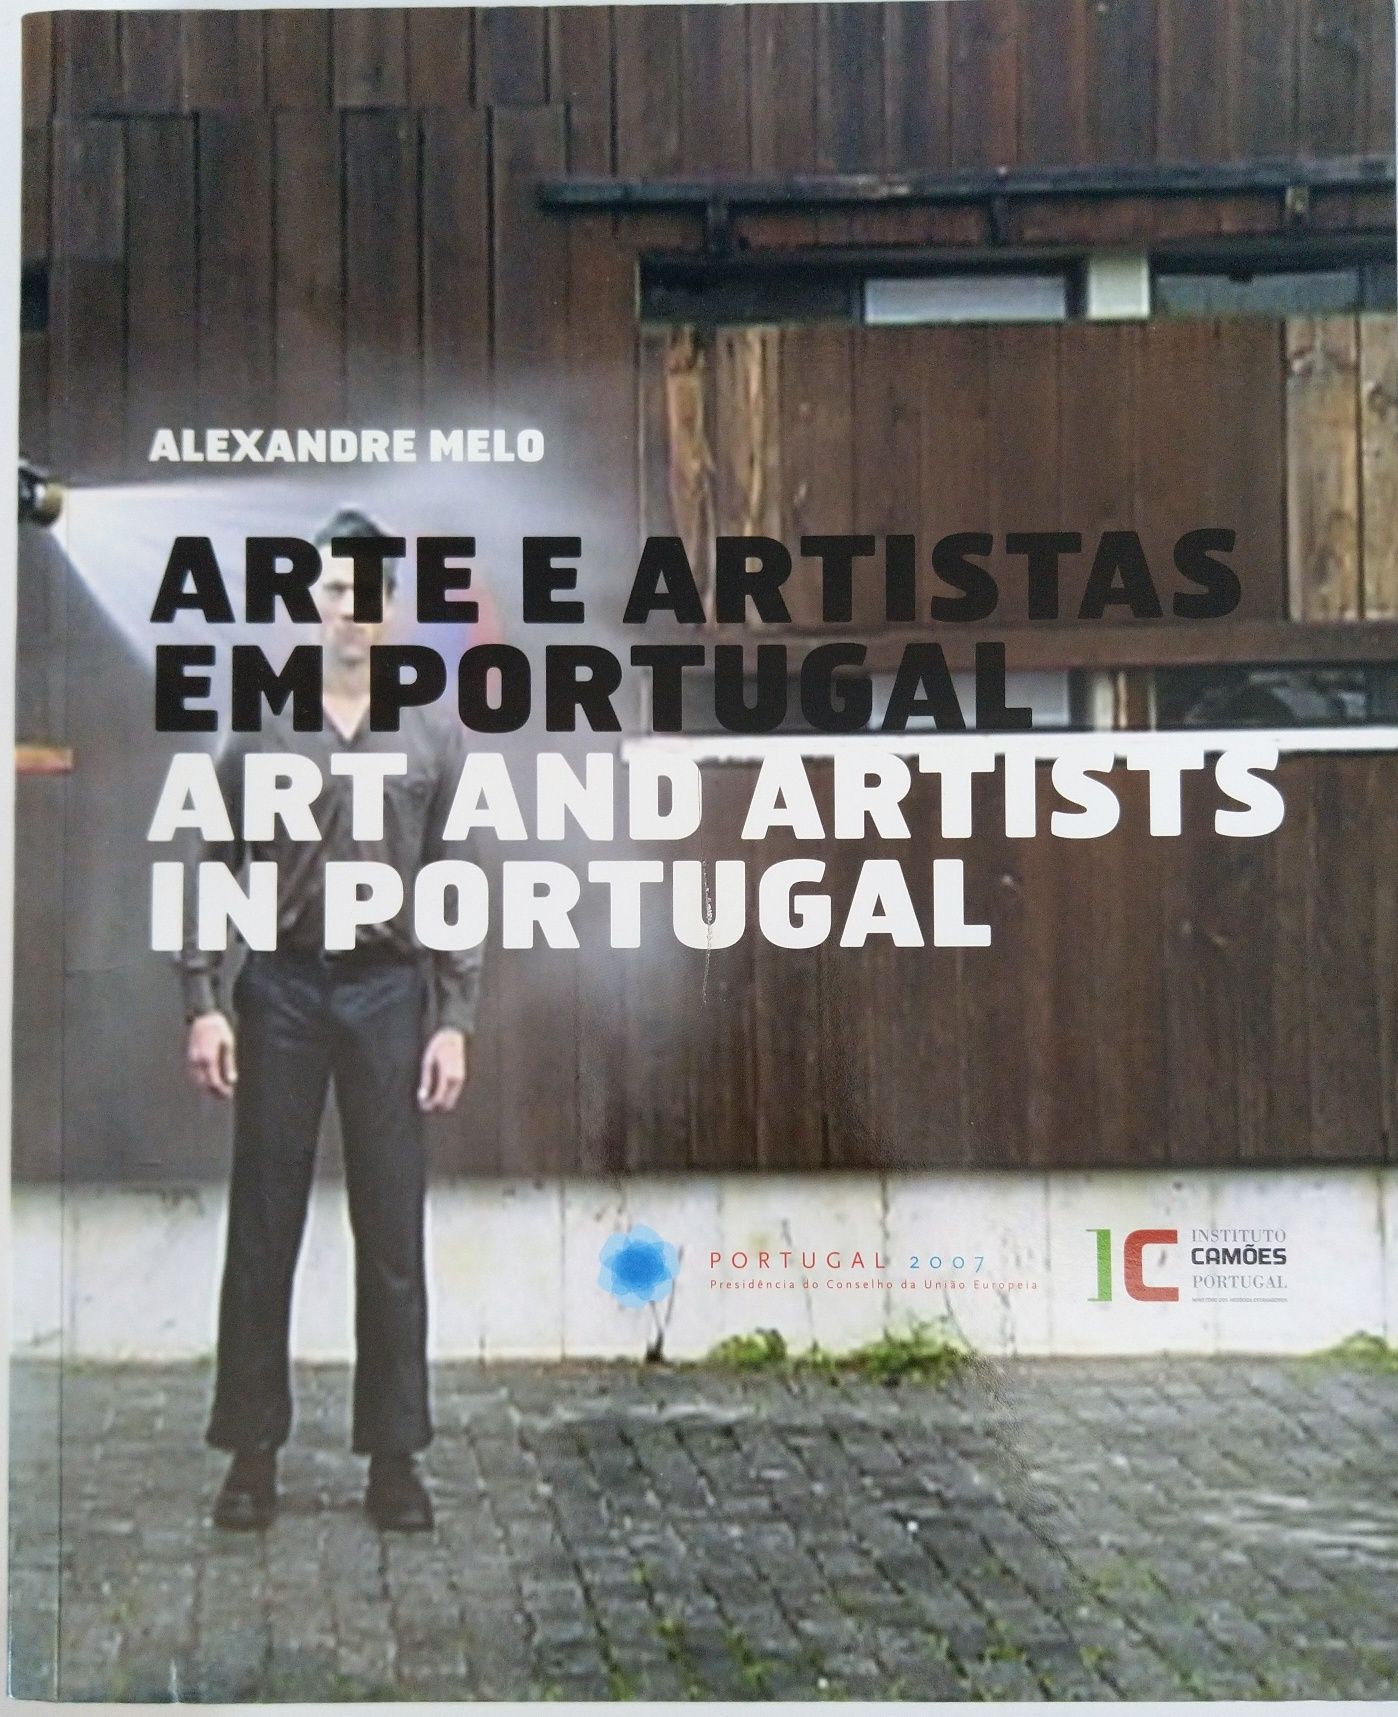 Arte e Artistas em Portugal